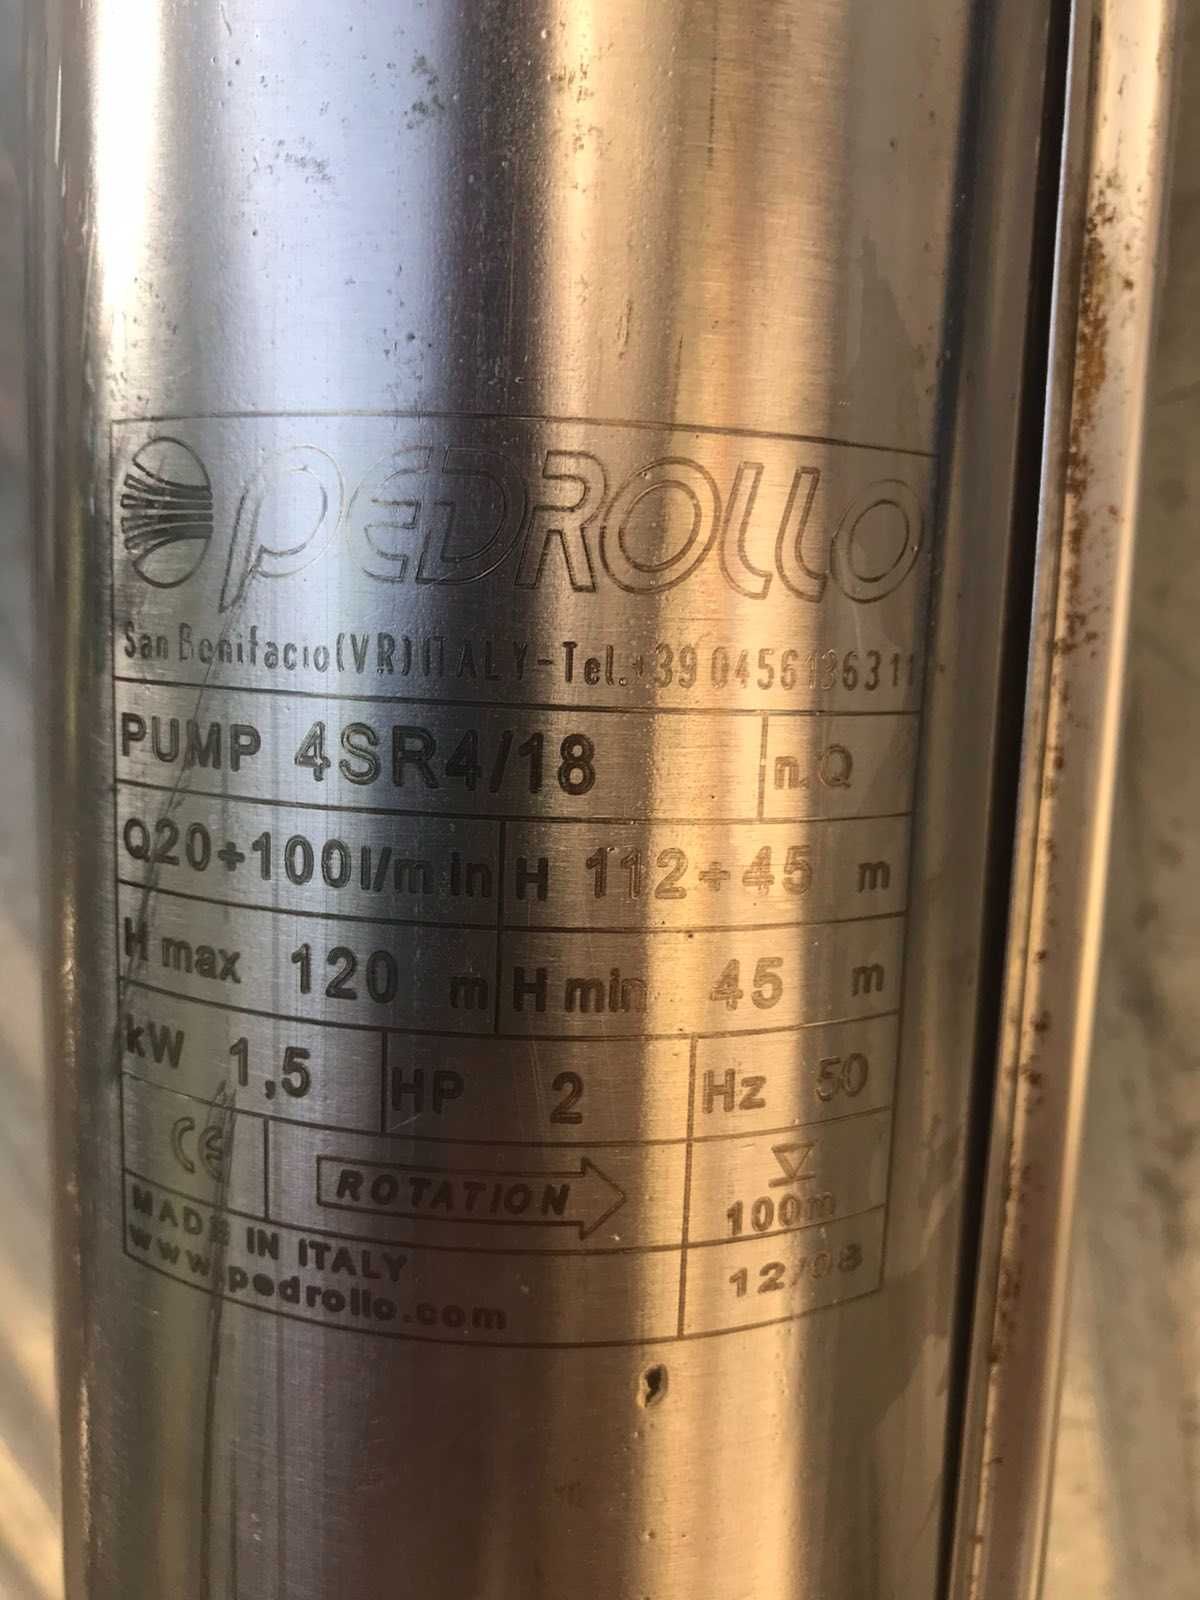 Насос скважинный Pedrollo 4SR 4/18 -  (Hmax 120m, 1.5 кВт) б/у